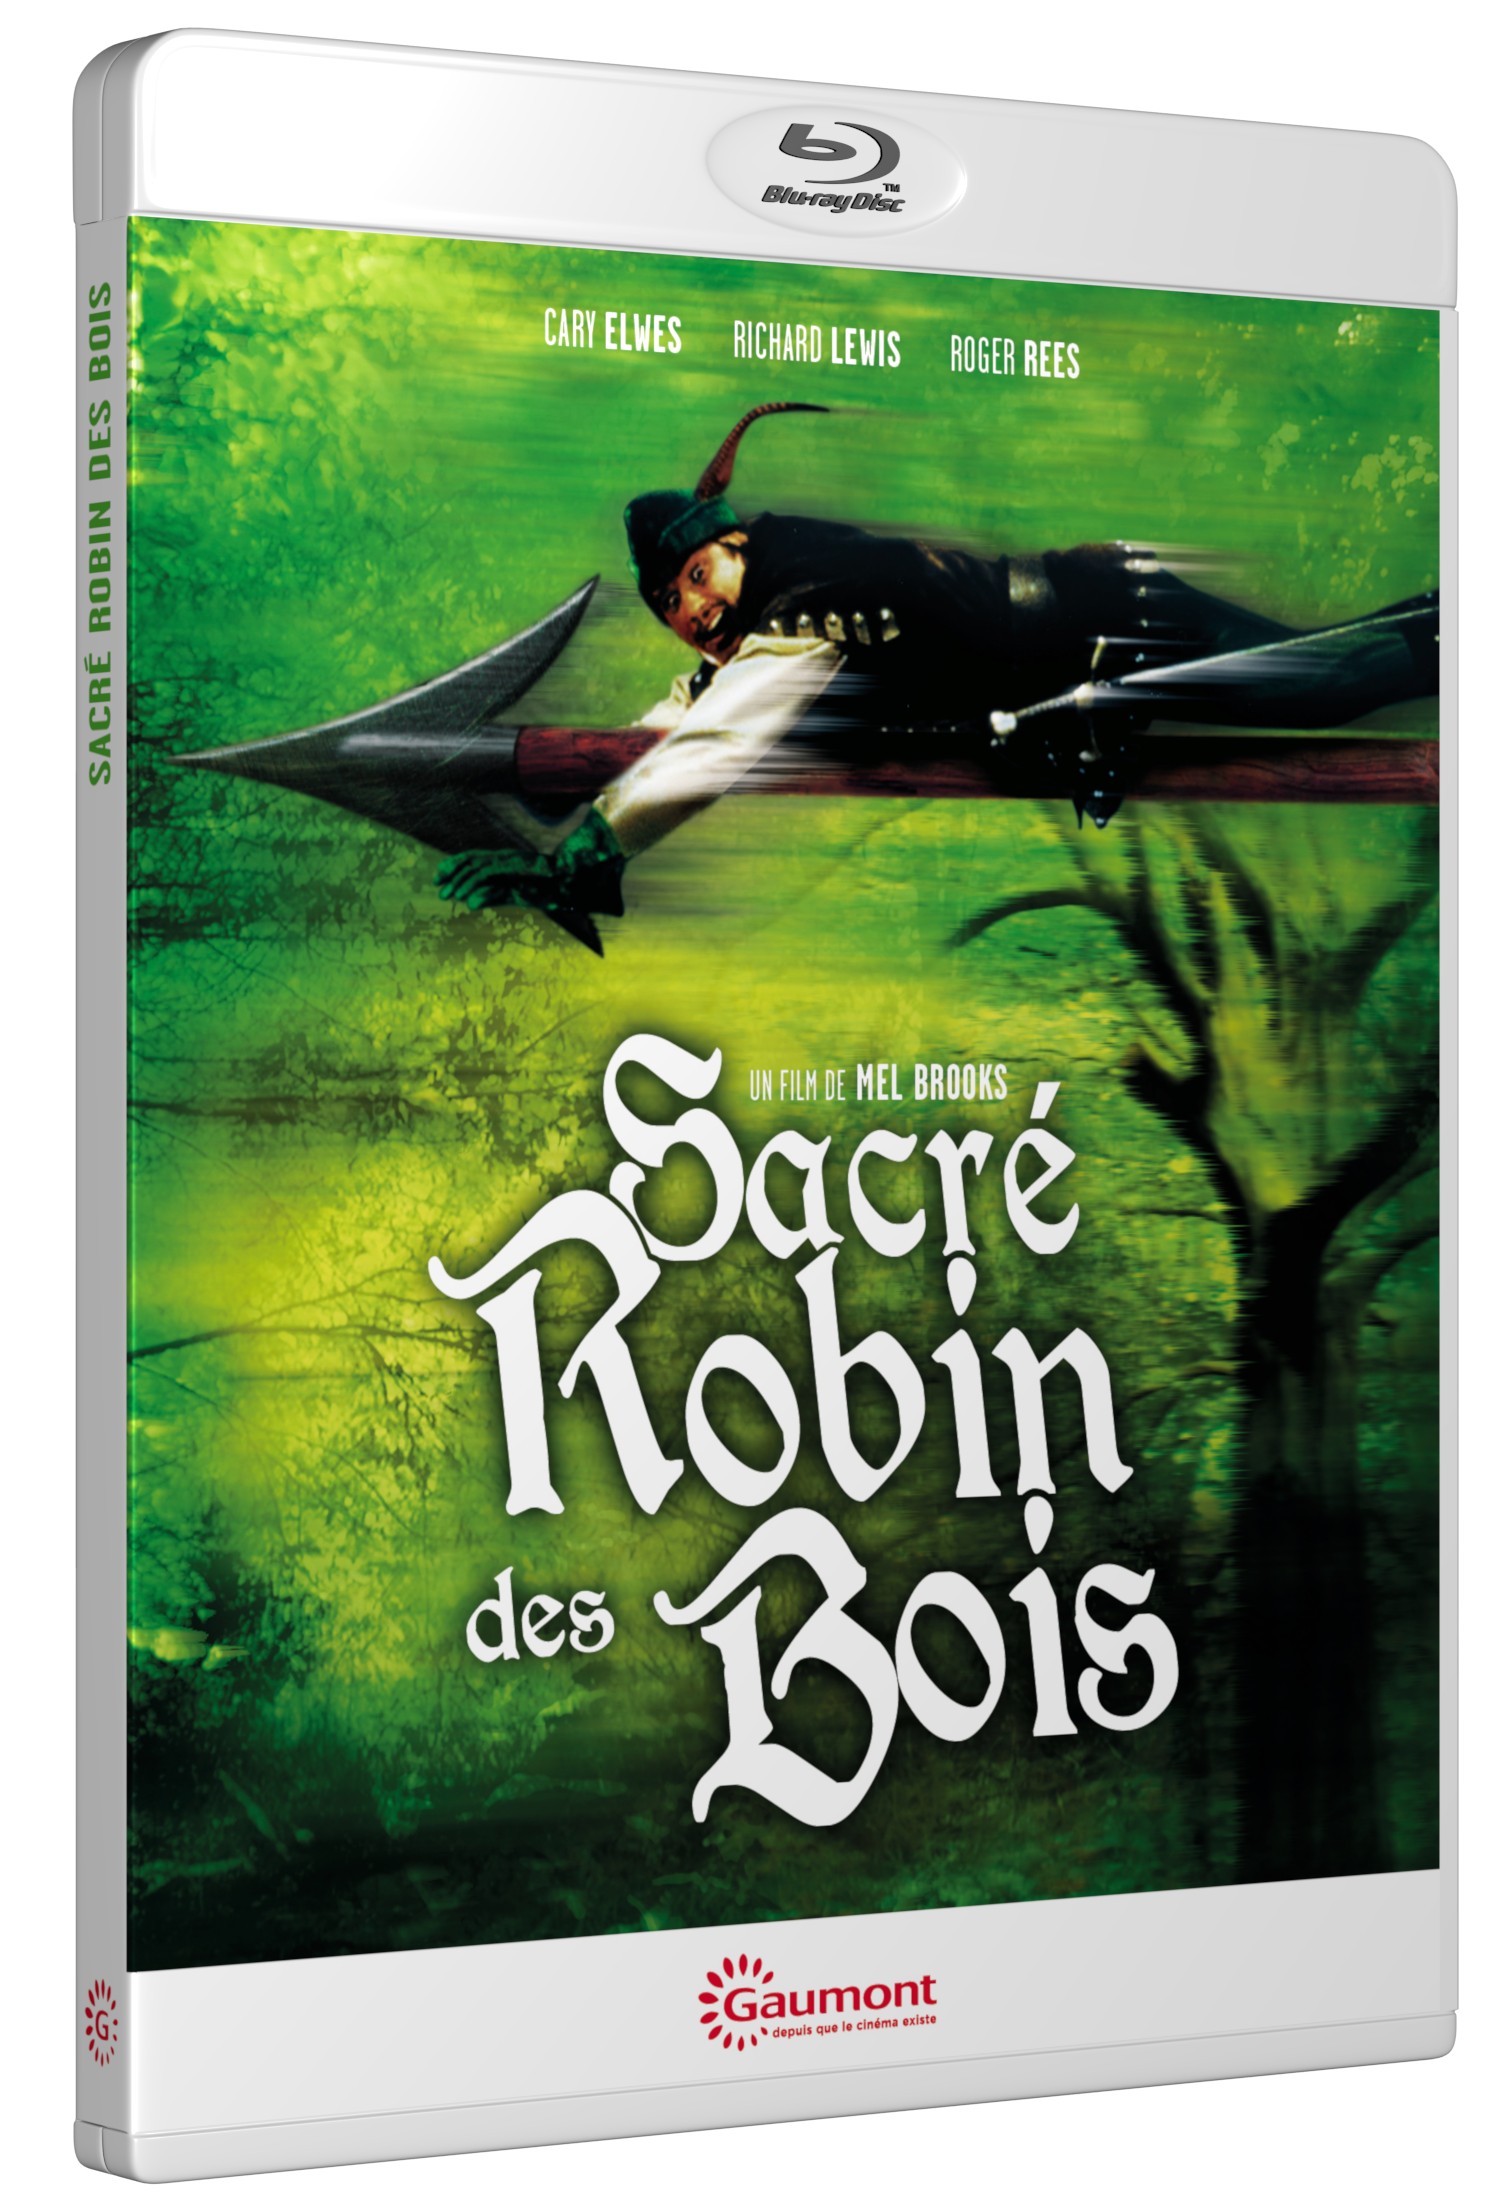 SACRE ROBIN DES BOIS - BD